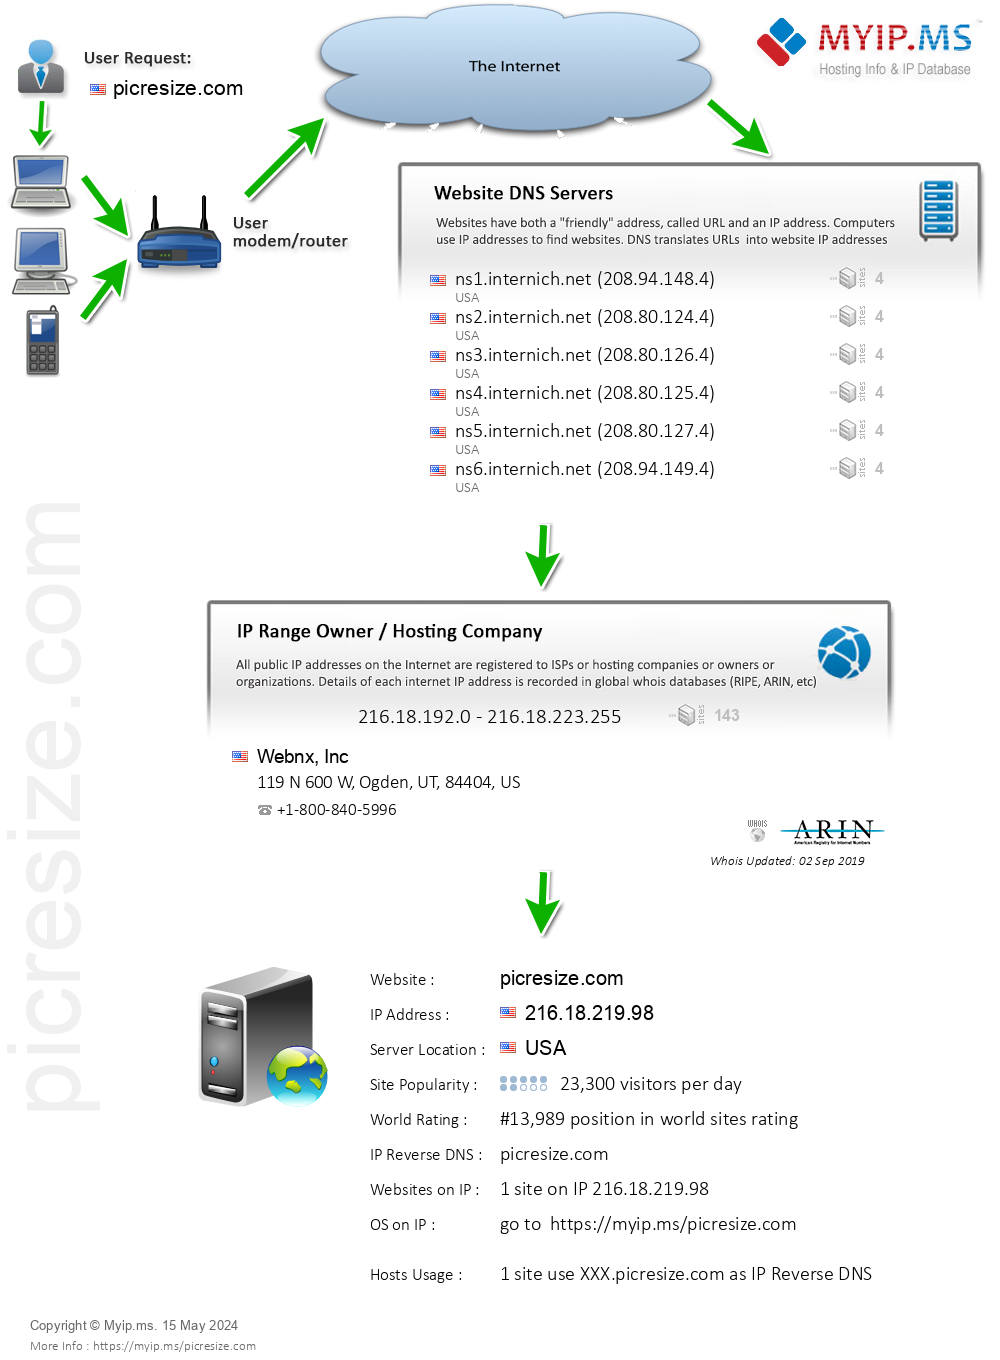 Picresize.com - Website Hosting Visual IP Diagram